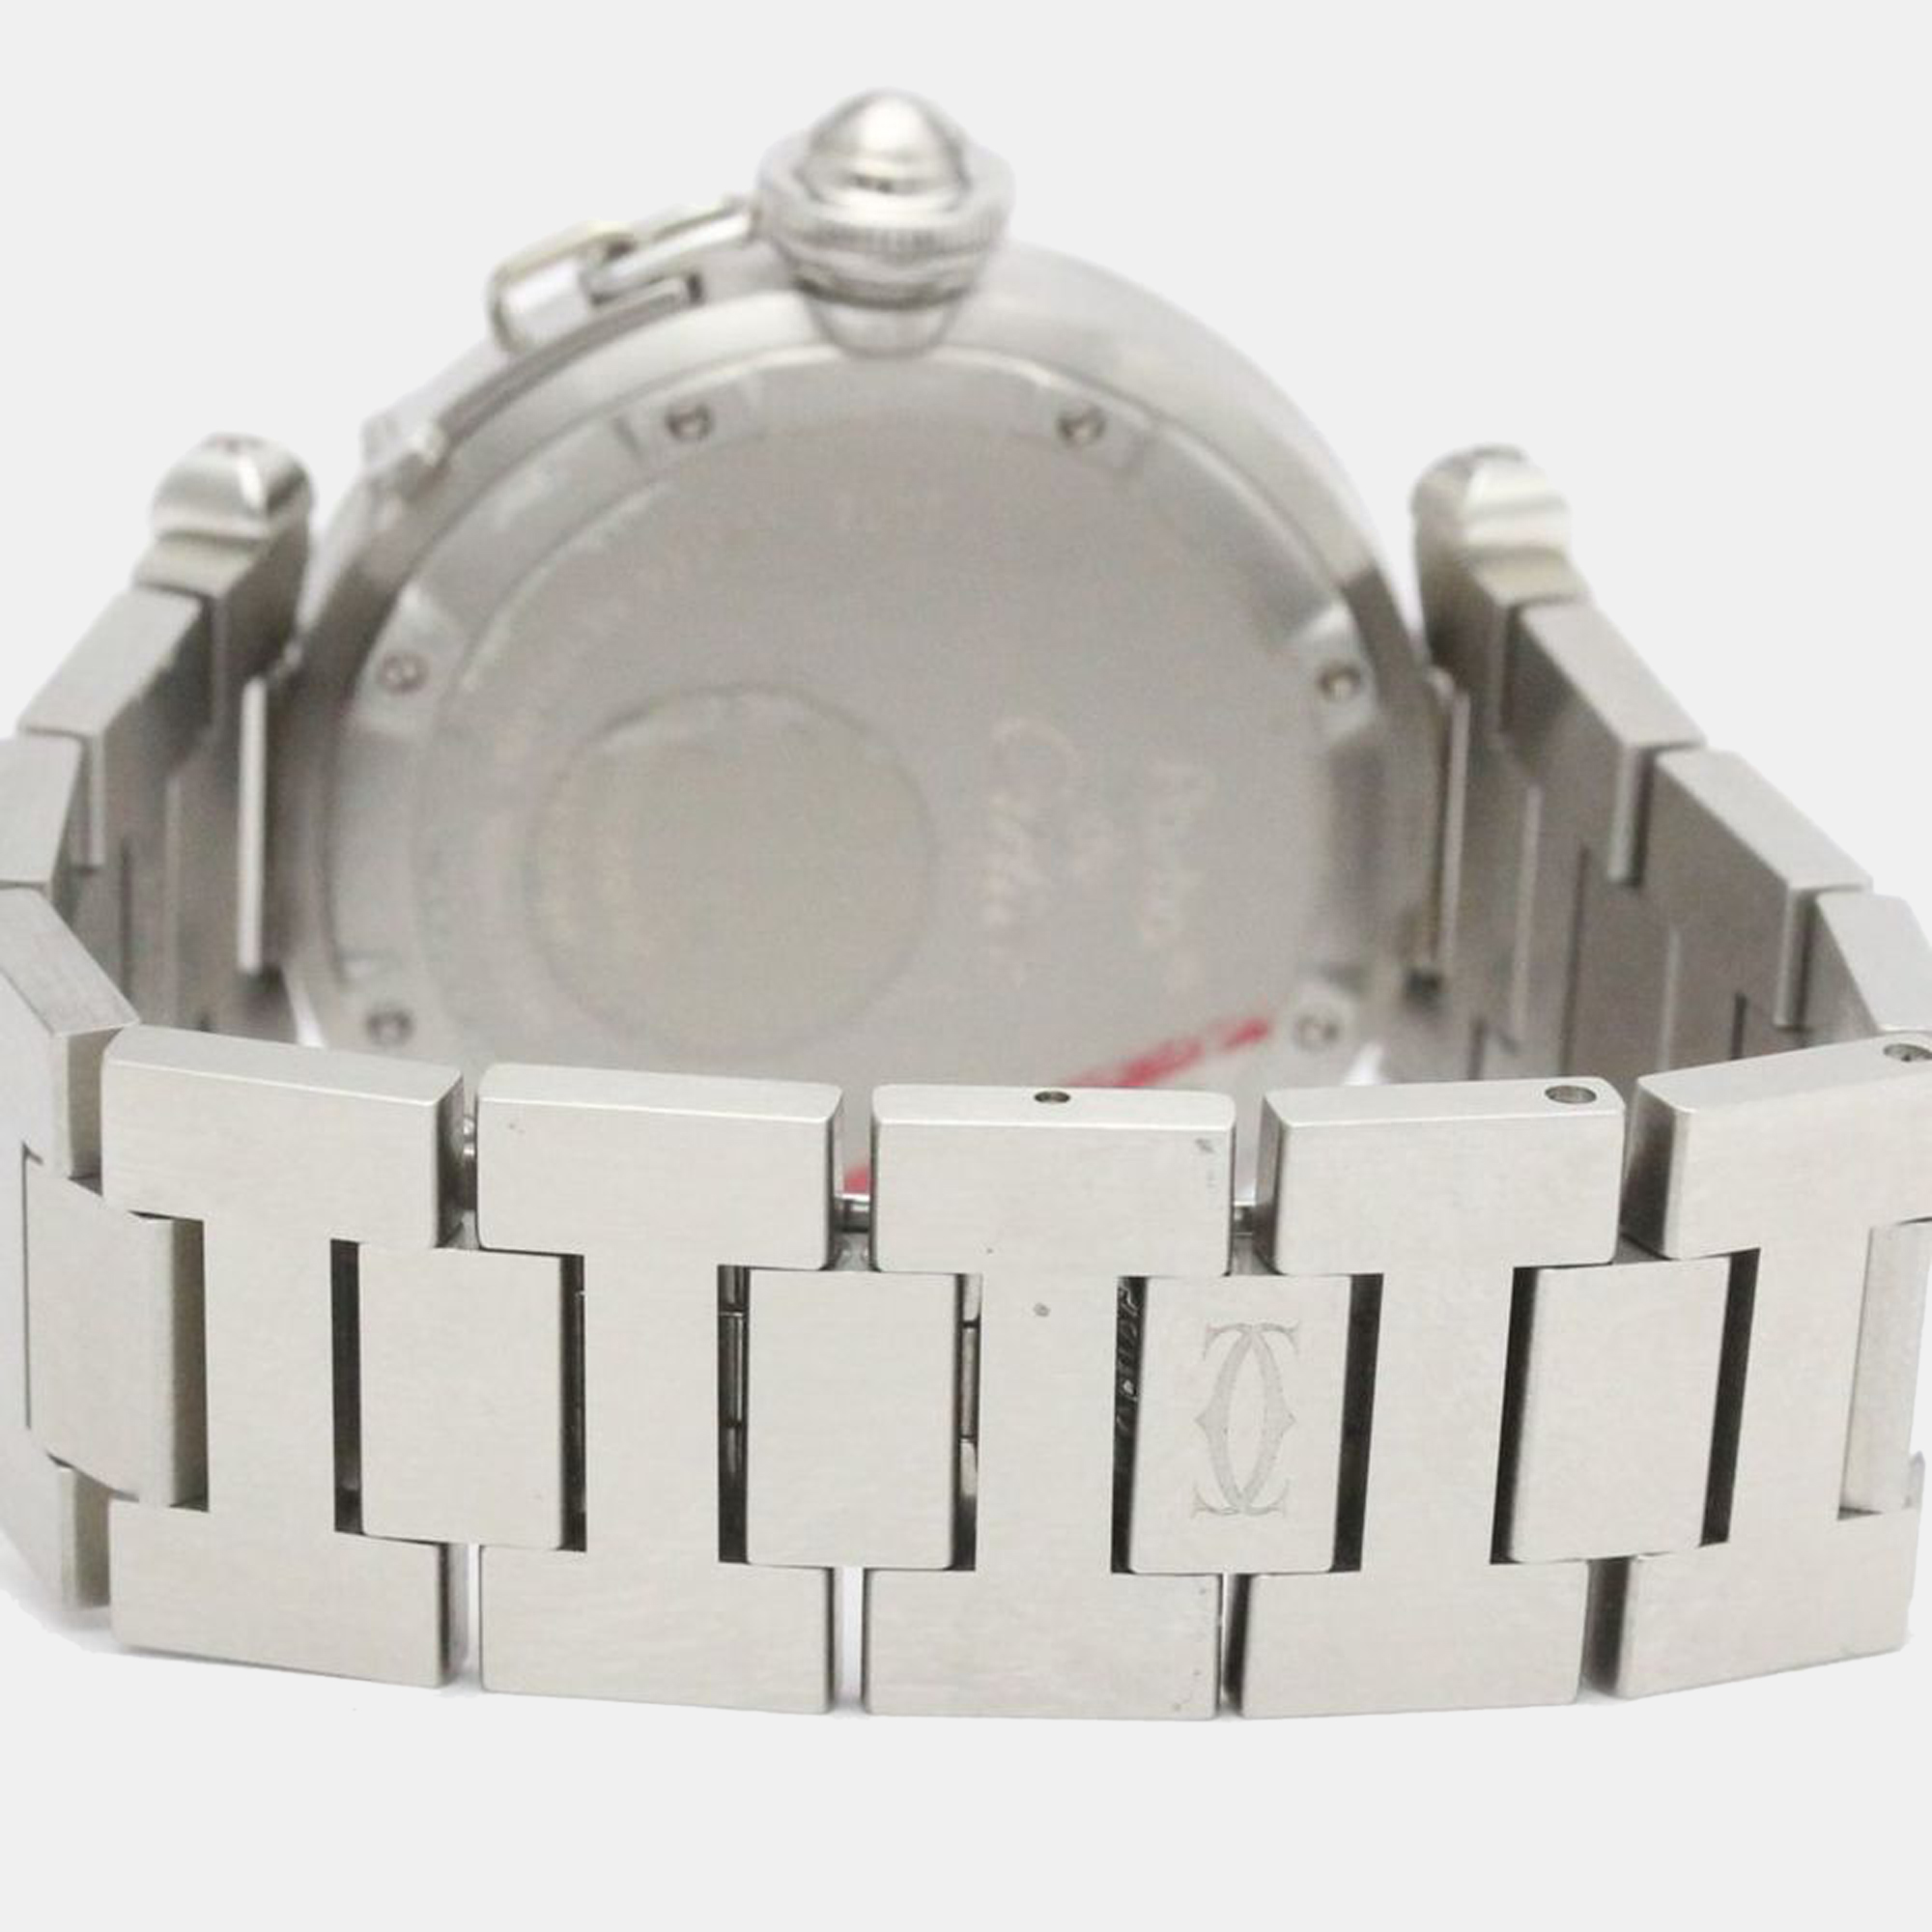 Cartier White Stainless Steel Pasha C De Cartier W31044M7 Automatic Men's Wristwatch 35 Mm